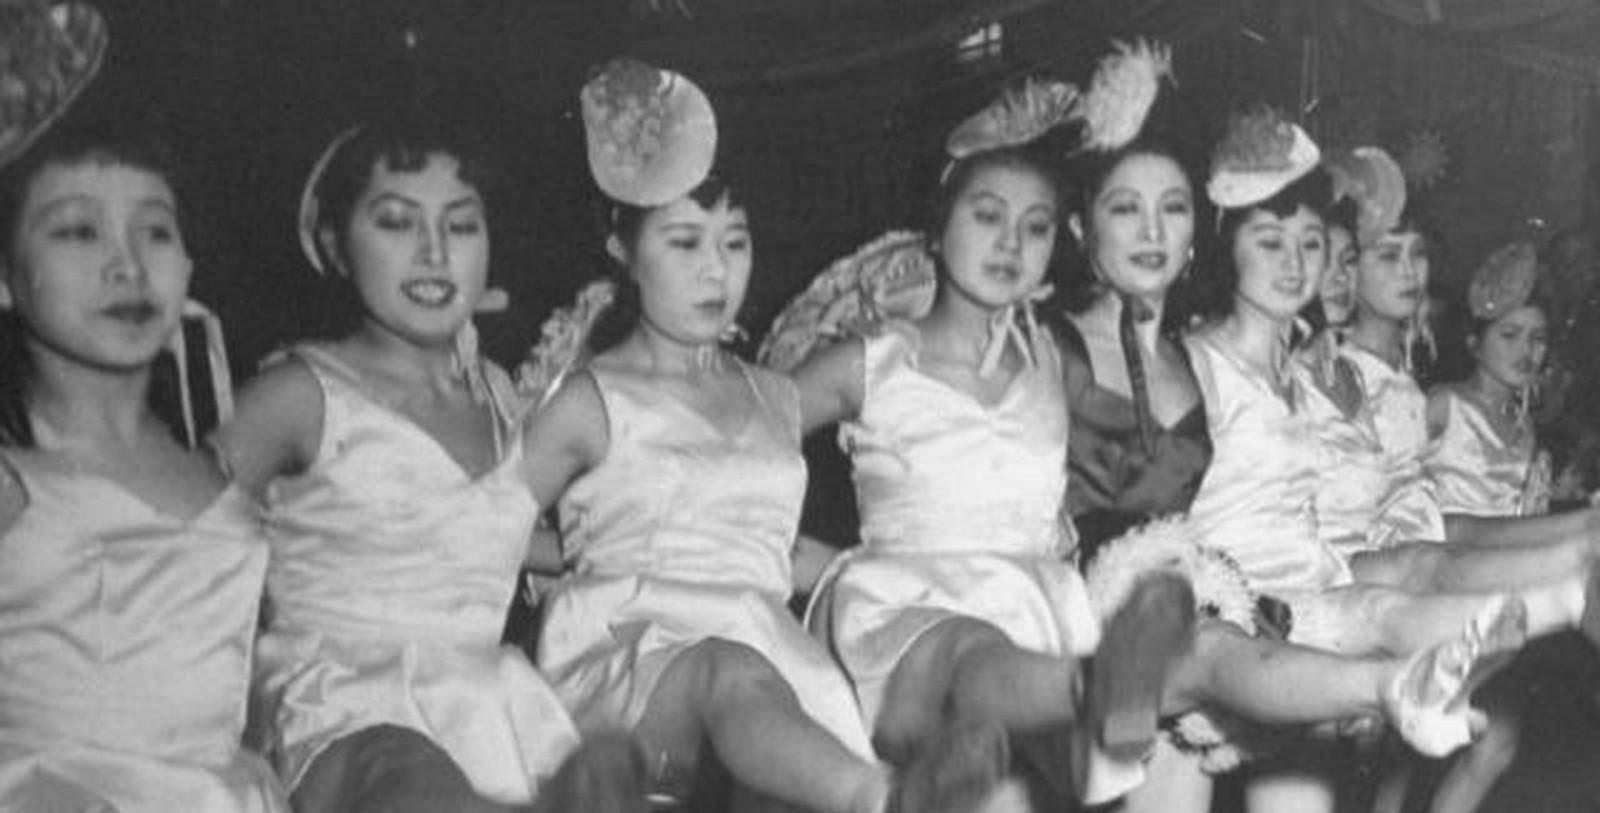 日本传统和服舞中的艺妓女形象 库存图片. 图片 包括有 有吸引力的, 查出, 赞誉, 集中, 汉语, 情感 - 179324677